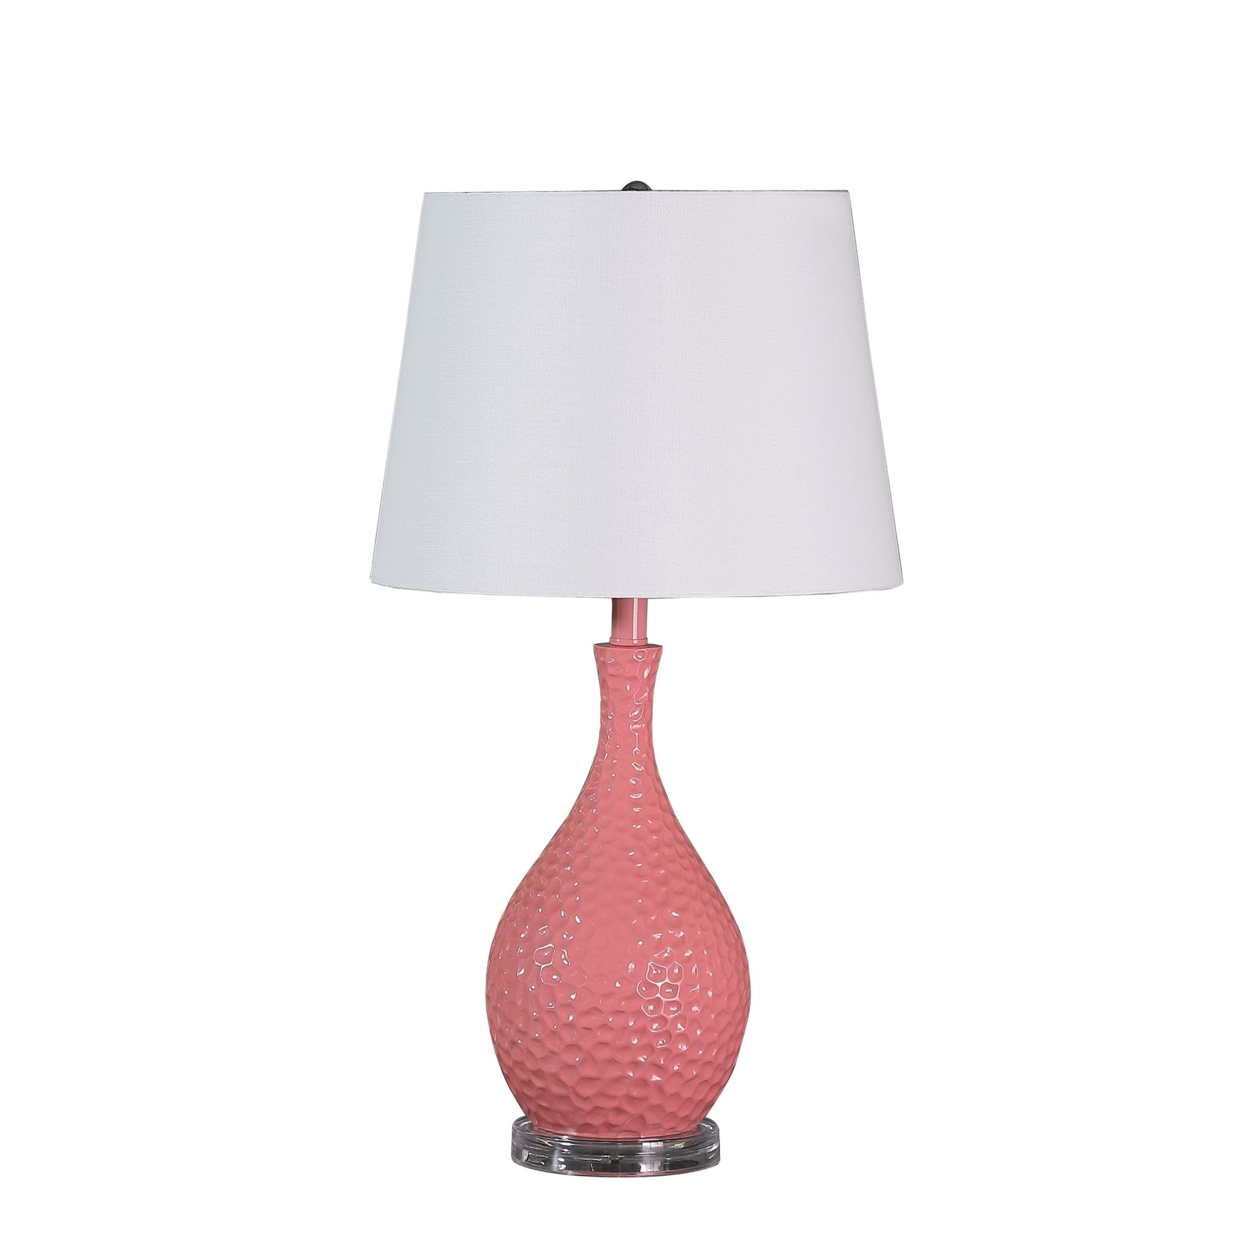 Pin Bowl Design Metal Table Lamp With Hammered Pattern, Pink- Saltoro Sherpi